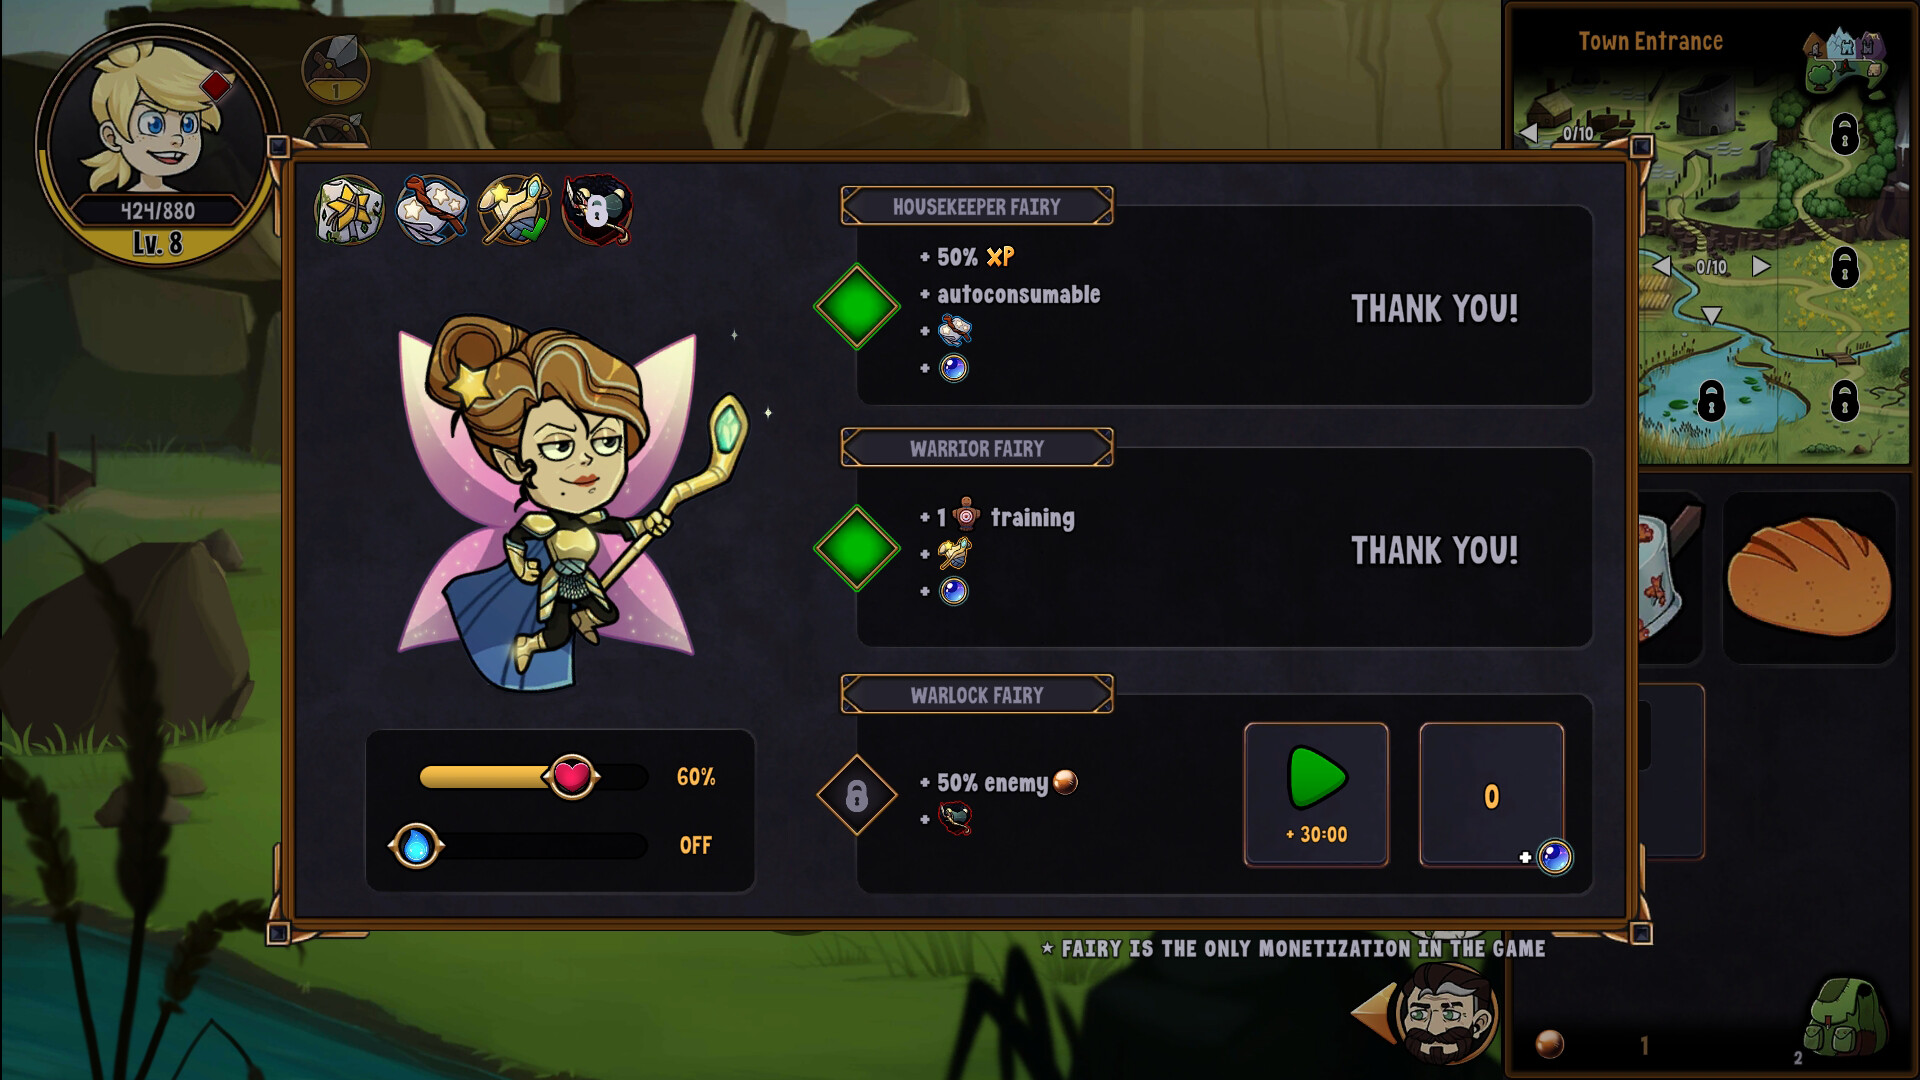 Hero Tale - Warrior Fairy Featured Screenshot #1